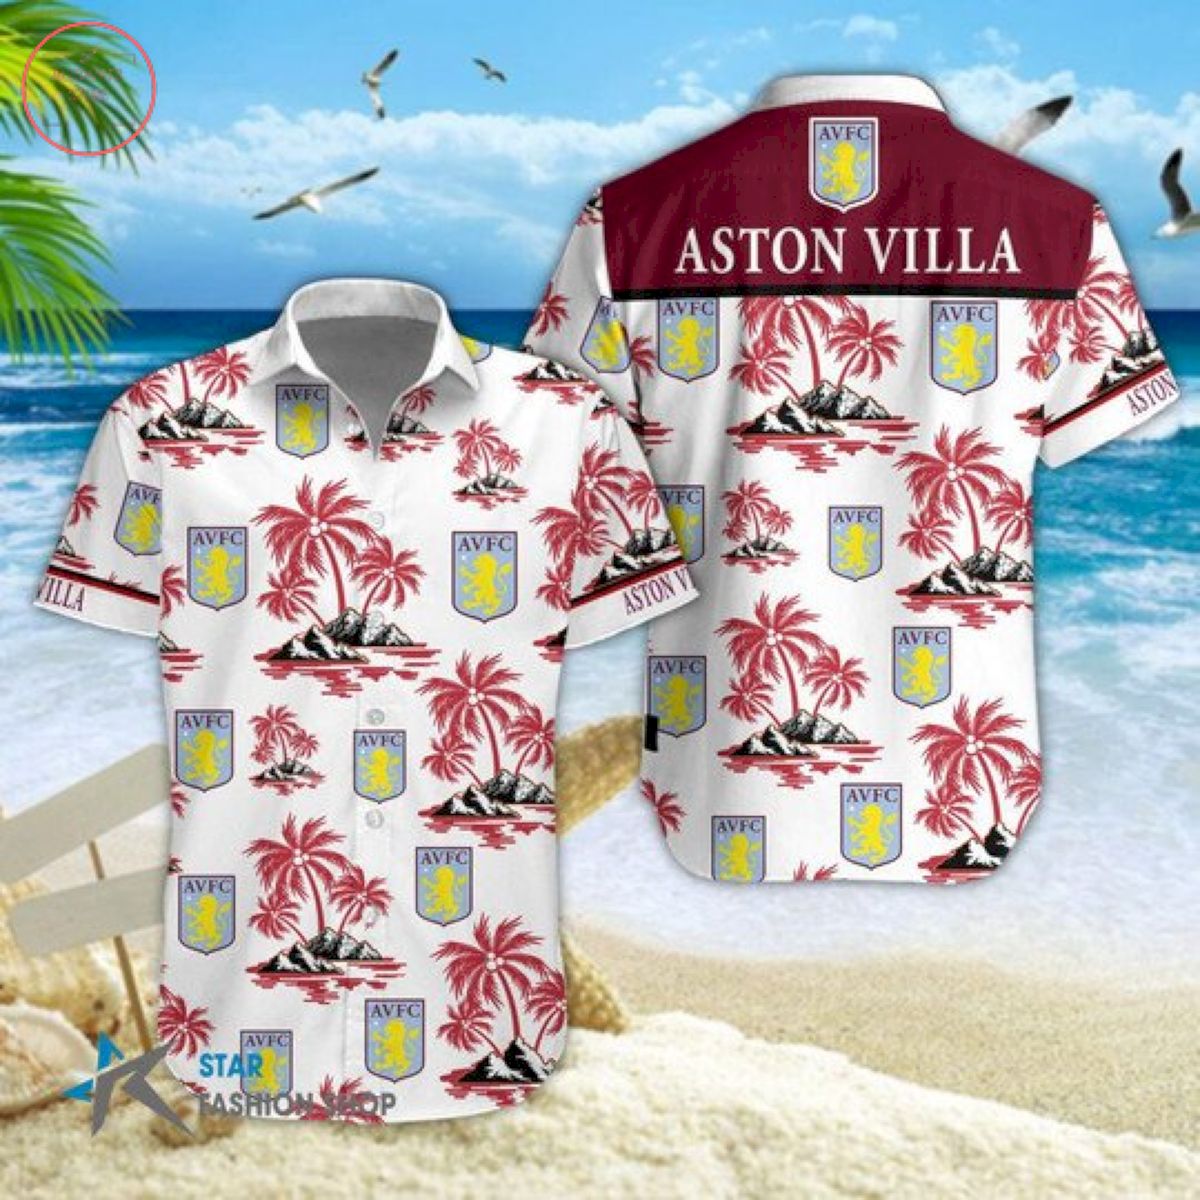 EPL Aston Villa Floral Hawaiian Shirts and Shorts